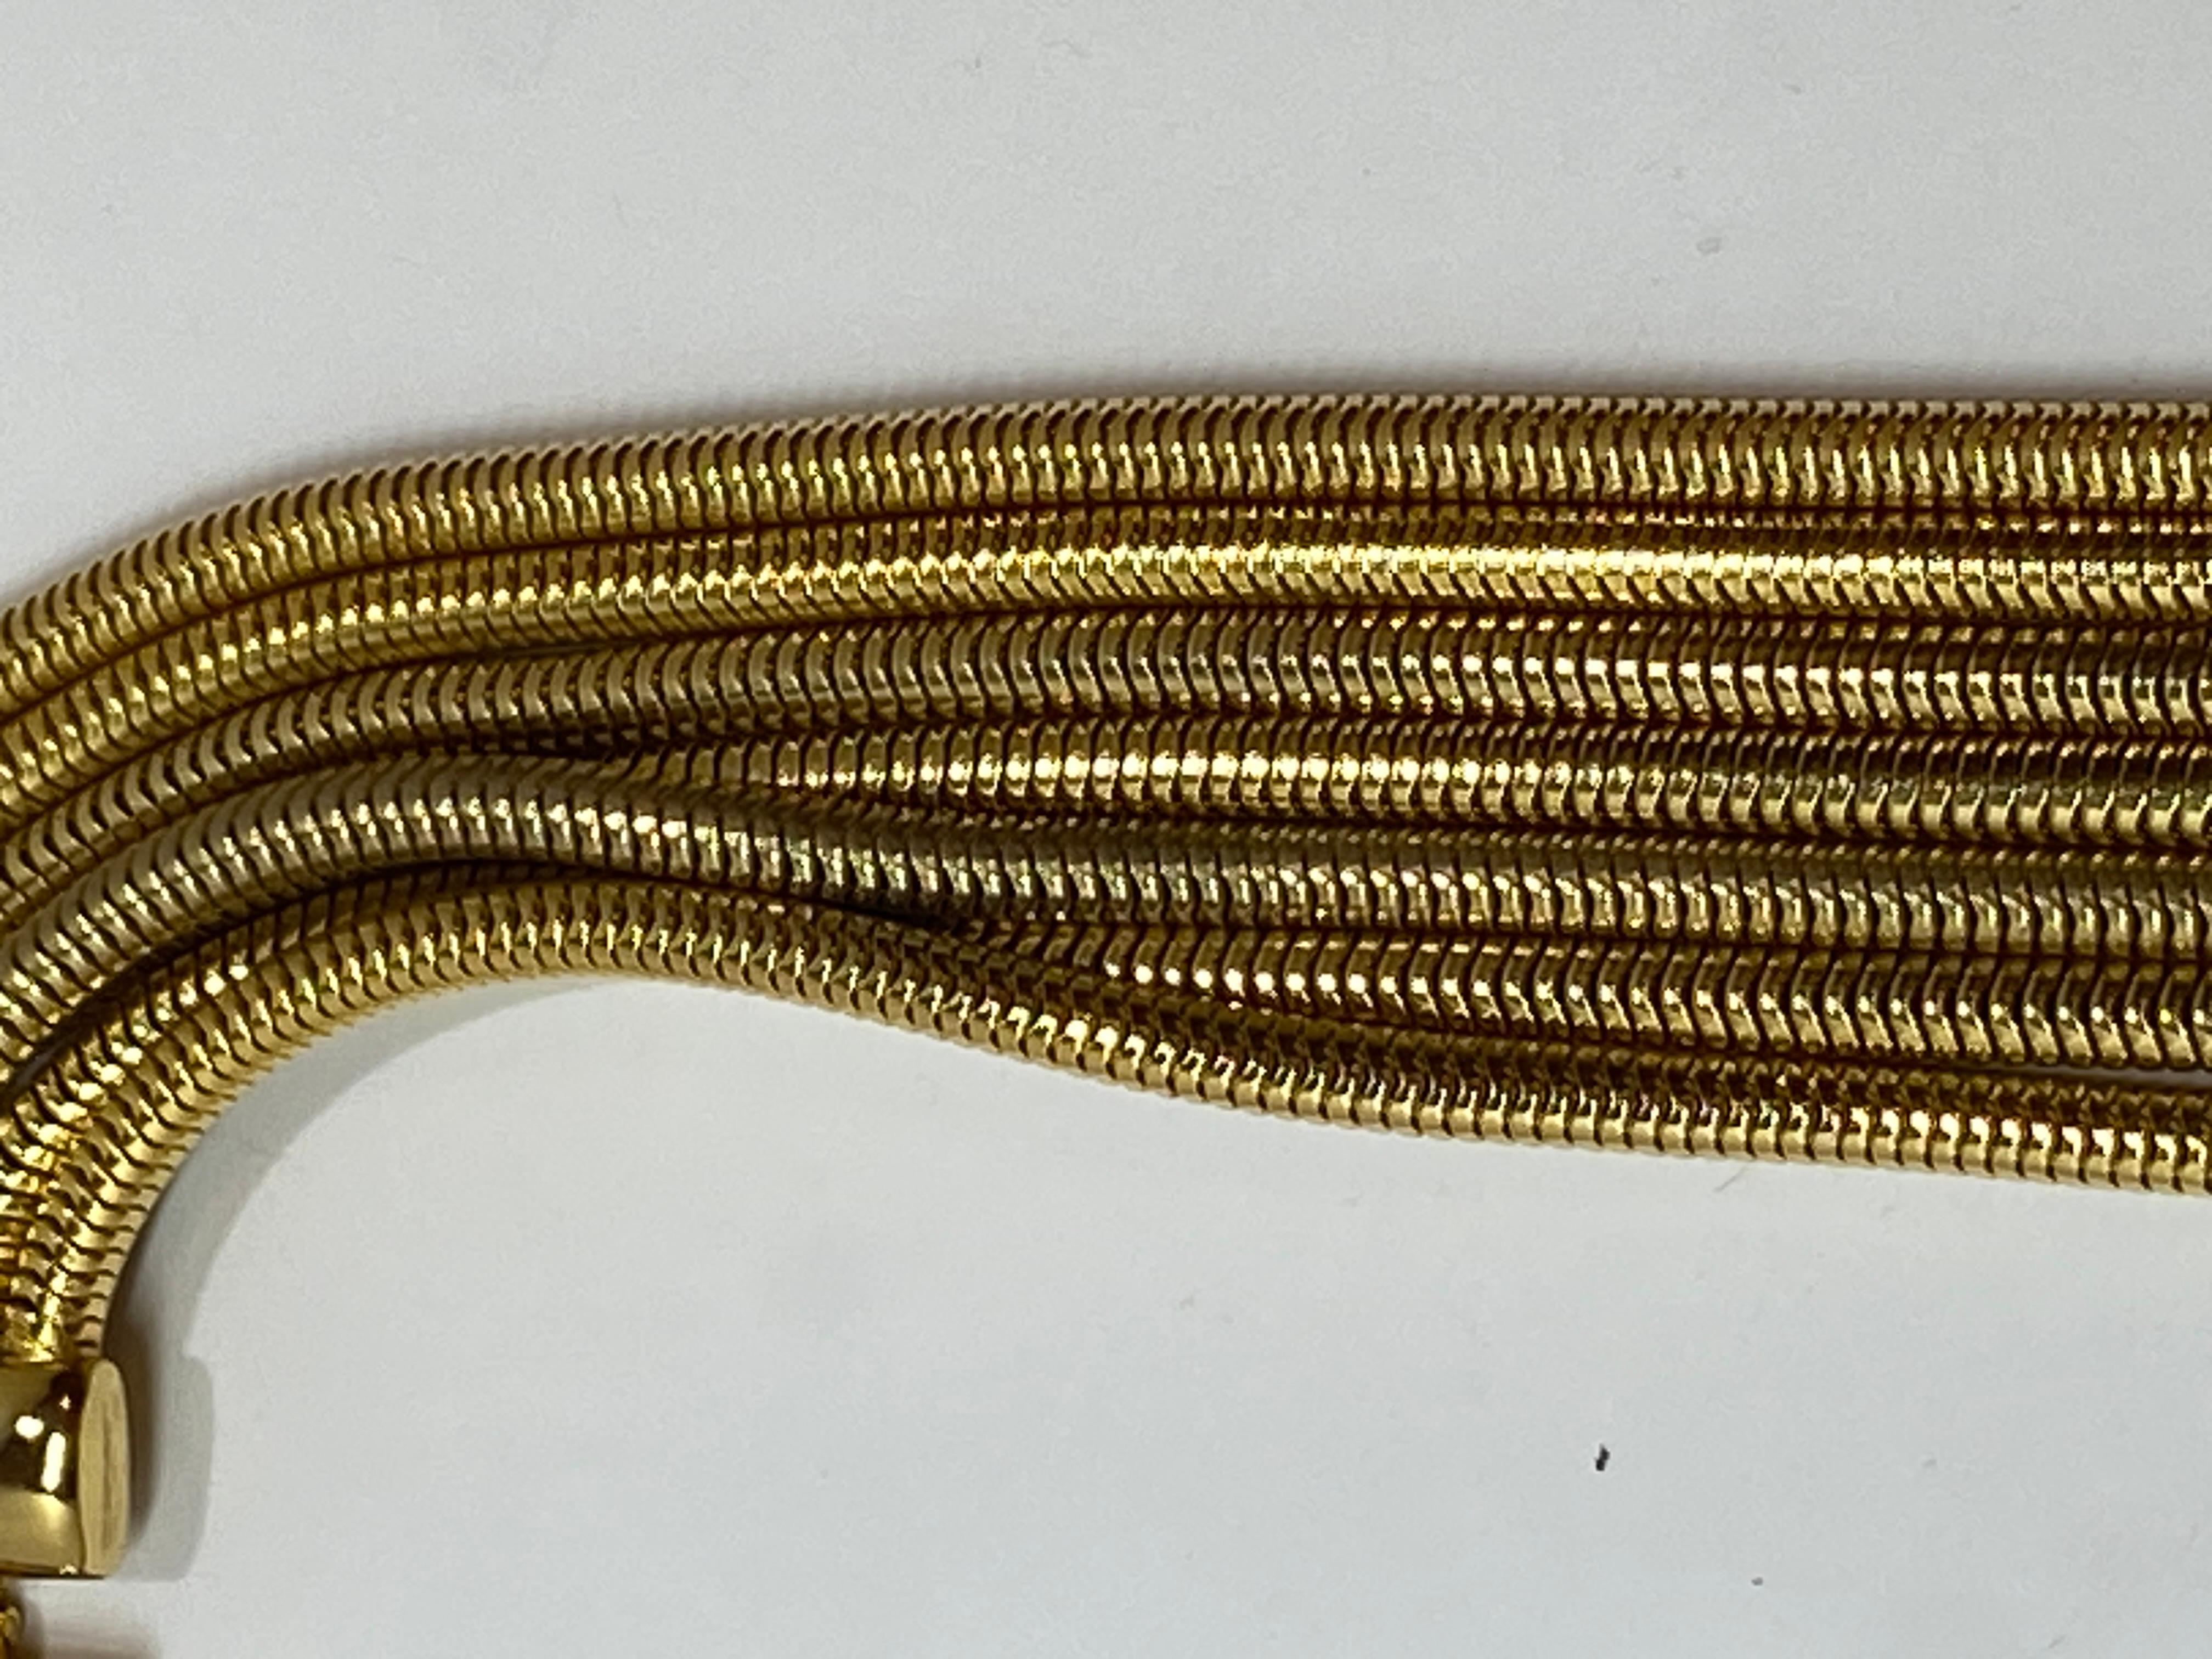 Diese wunderbar elegante, glatte, mehrgliedrige Halskette aus poliertem Gold mit Schlangengliedern misst an der kürzesten Stelle 16 bis 21 Zoll. Die Halskette liegt angenehm glatt am Hals an. Die Breite beträgt 1 1/4 Zoll. Der Abschluss ist ein